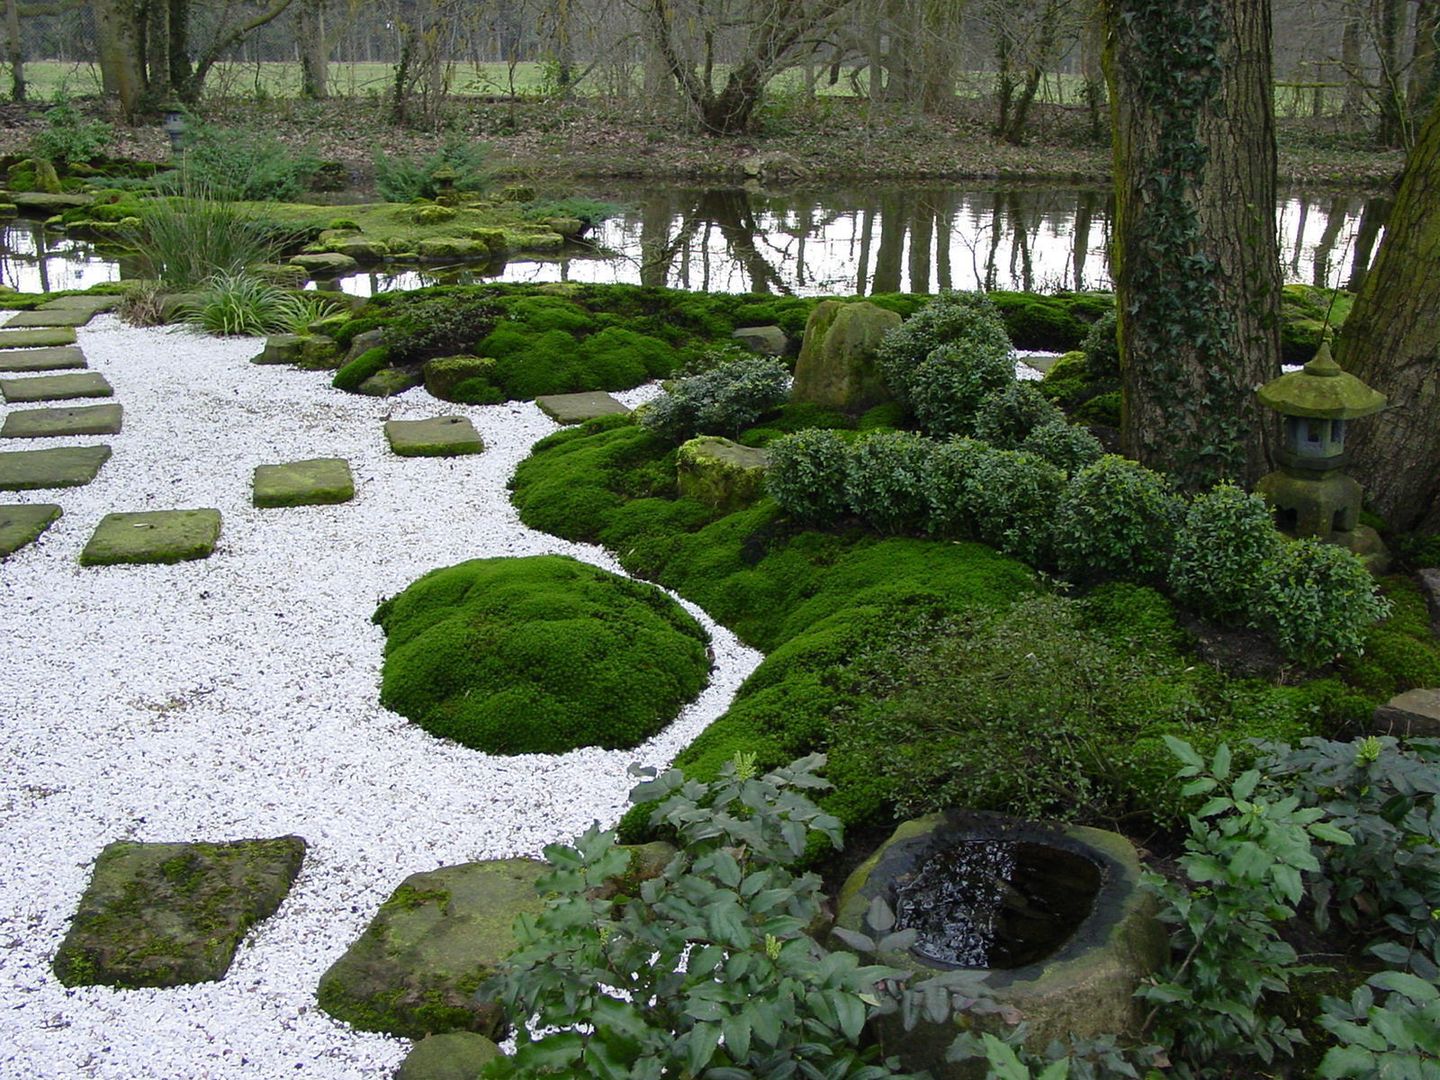 Wasser im Garten, Natur-Teiche, Schwimm-Teiche, Wasserfälle, Bachläufe, Tsukubai, japan-garten-kultur japan-garten-kultur Vườn phong cách châu Á